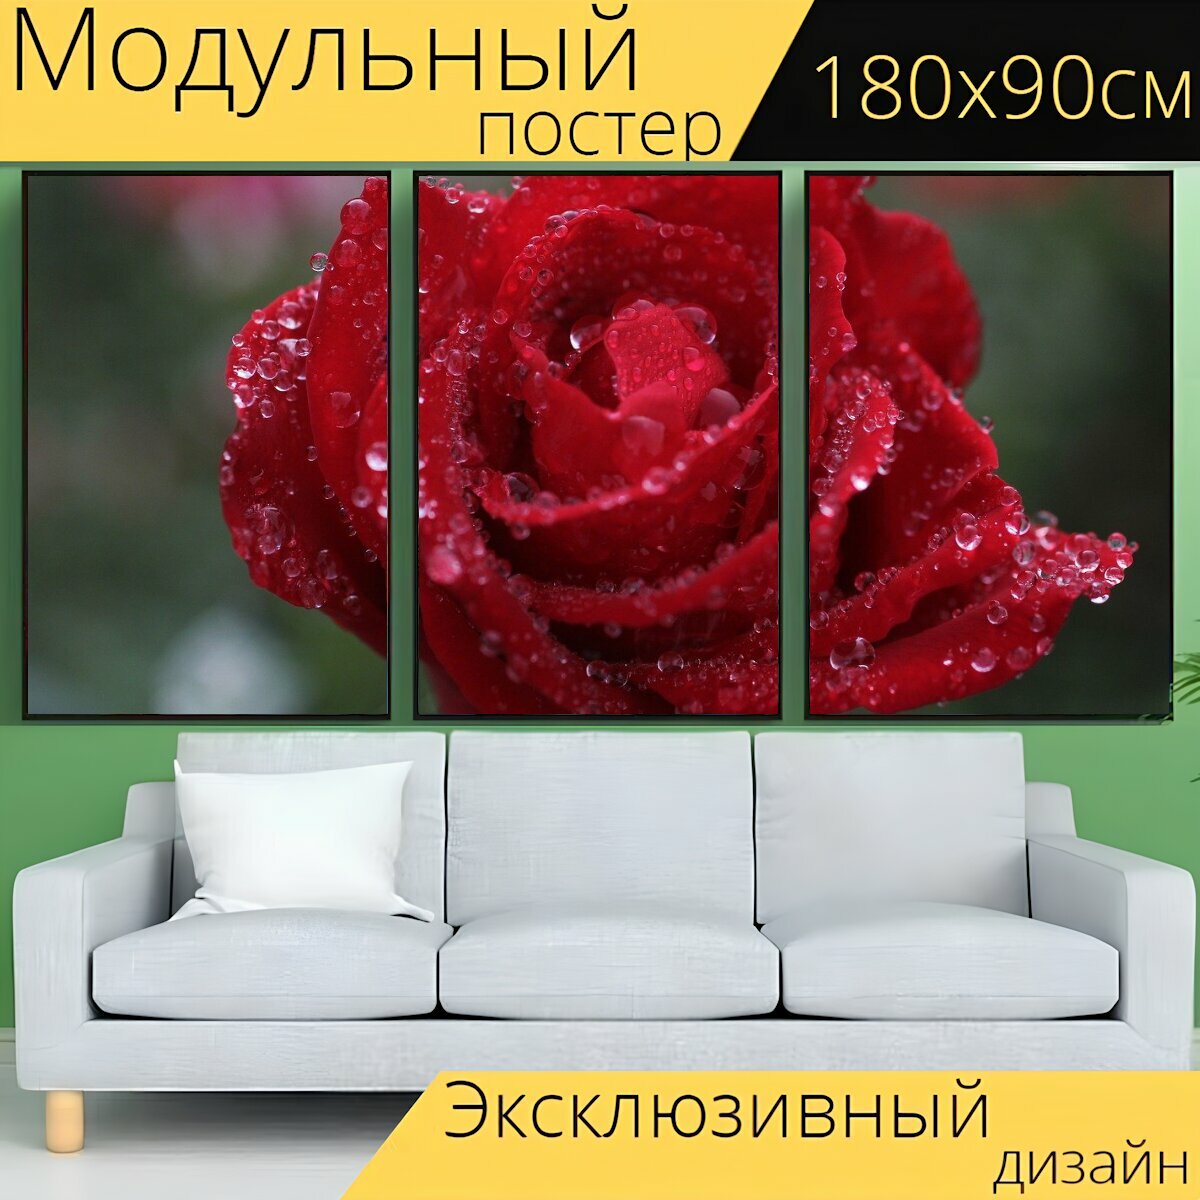 Модульный постер "Роза, красная роза, капли дождя" 180 x 90 см. для интерьера